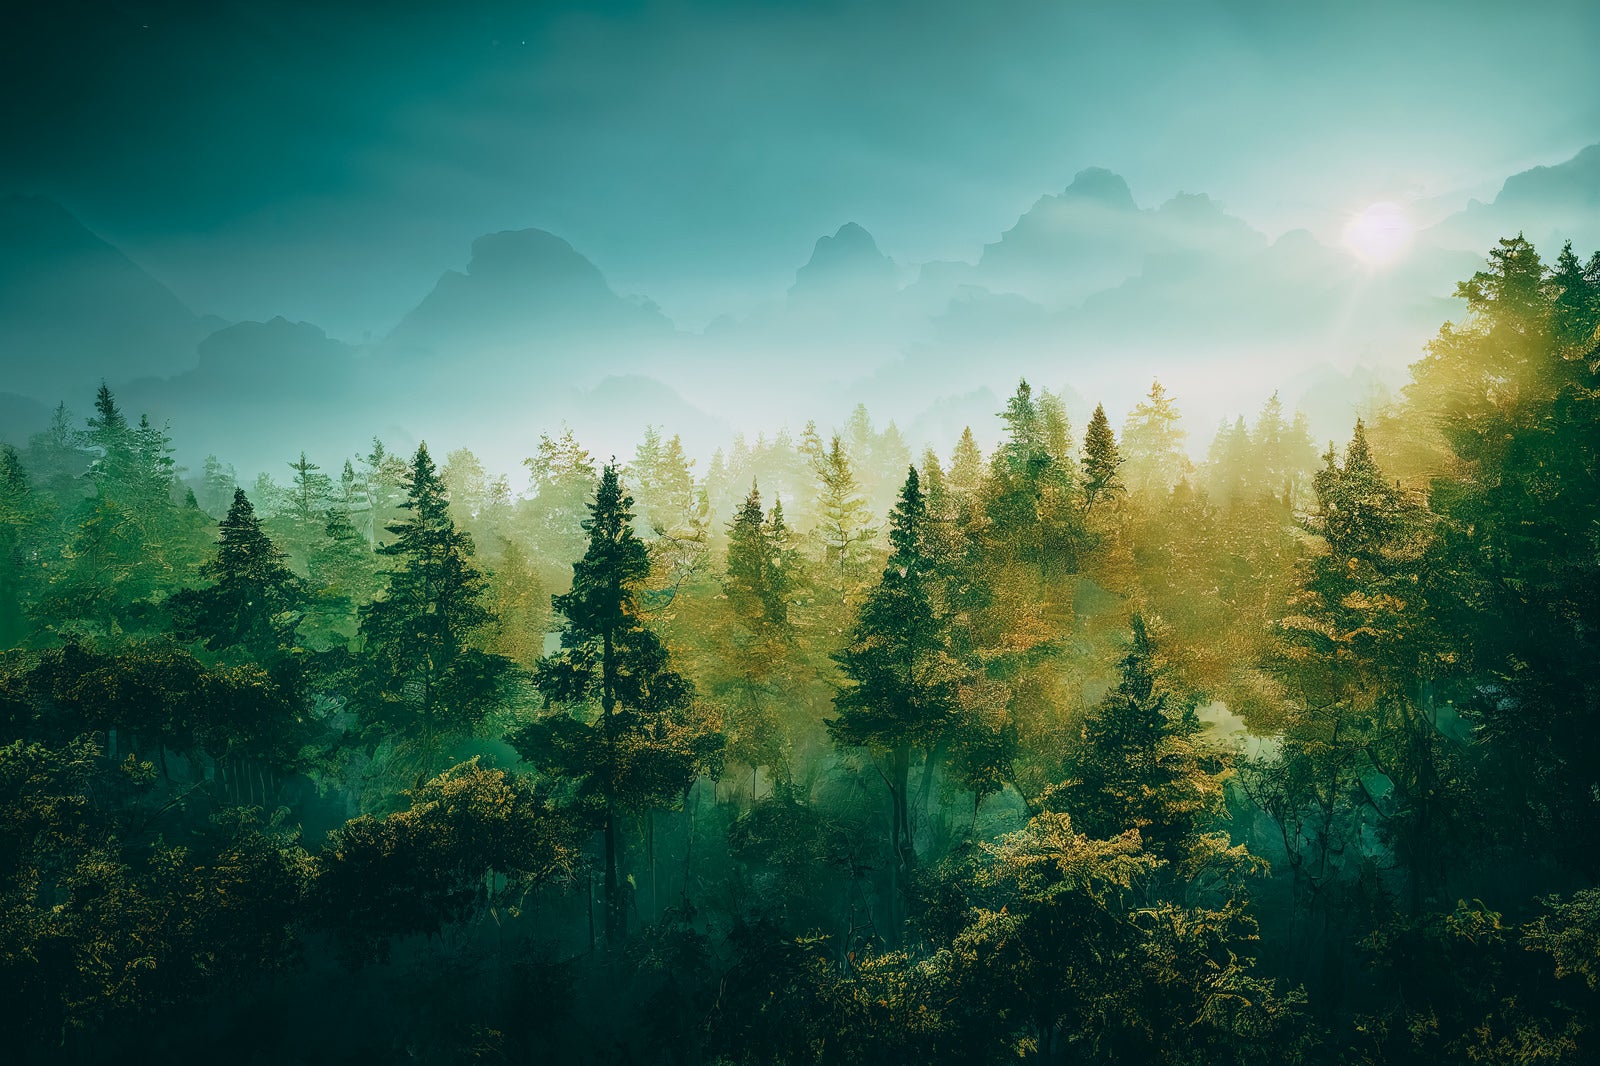 「朝靄の森に差す曙光」の写真